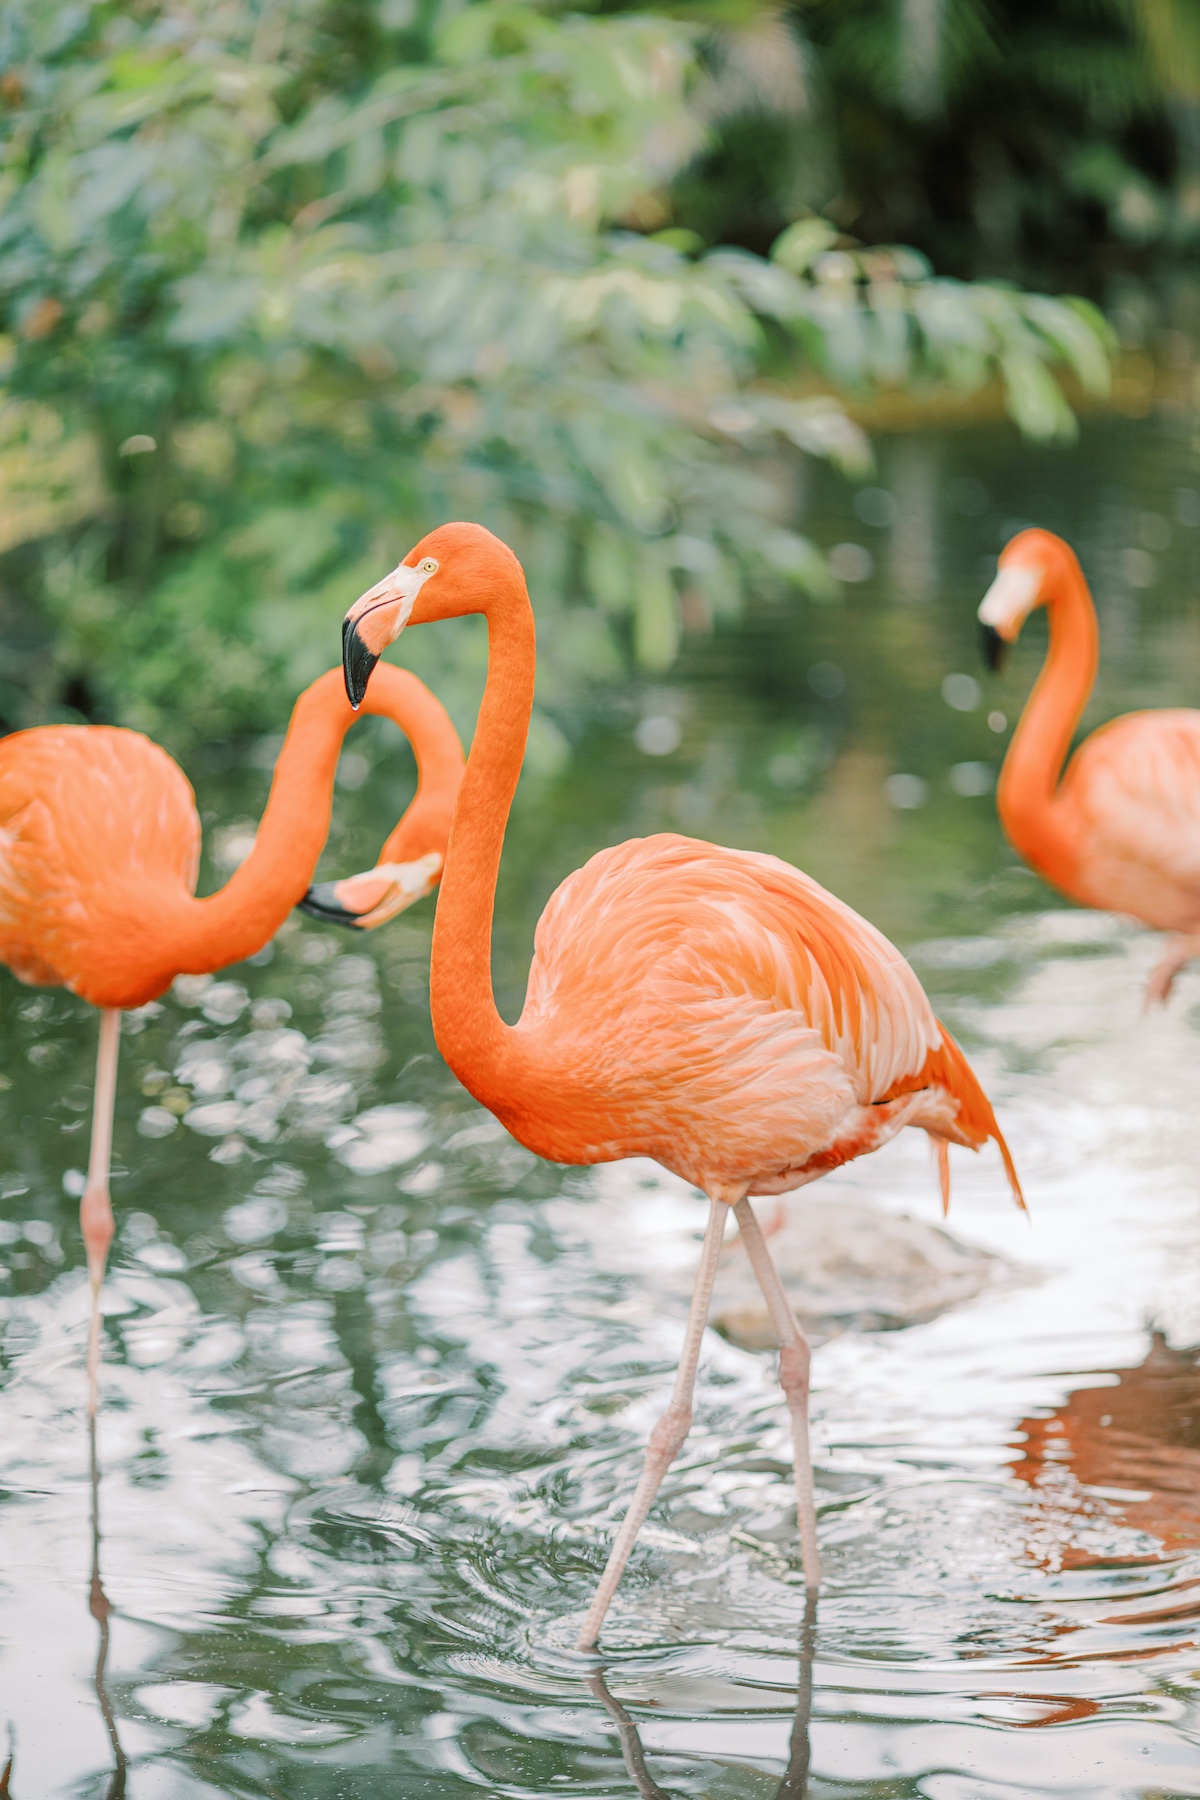 Everglades Wonder Garden styled with flamingos